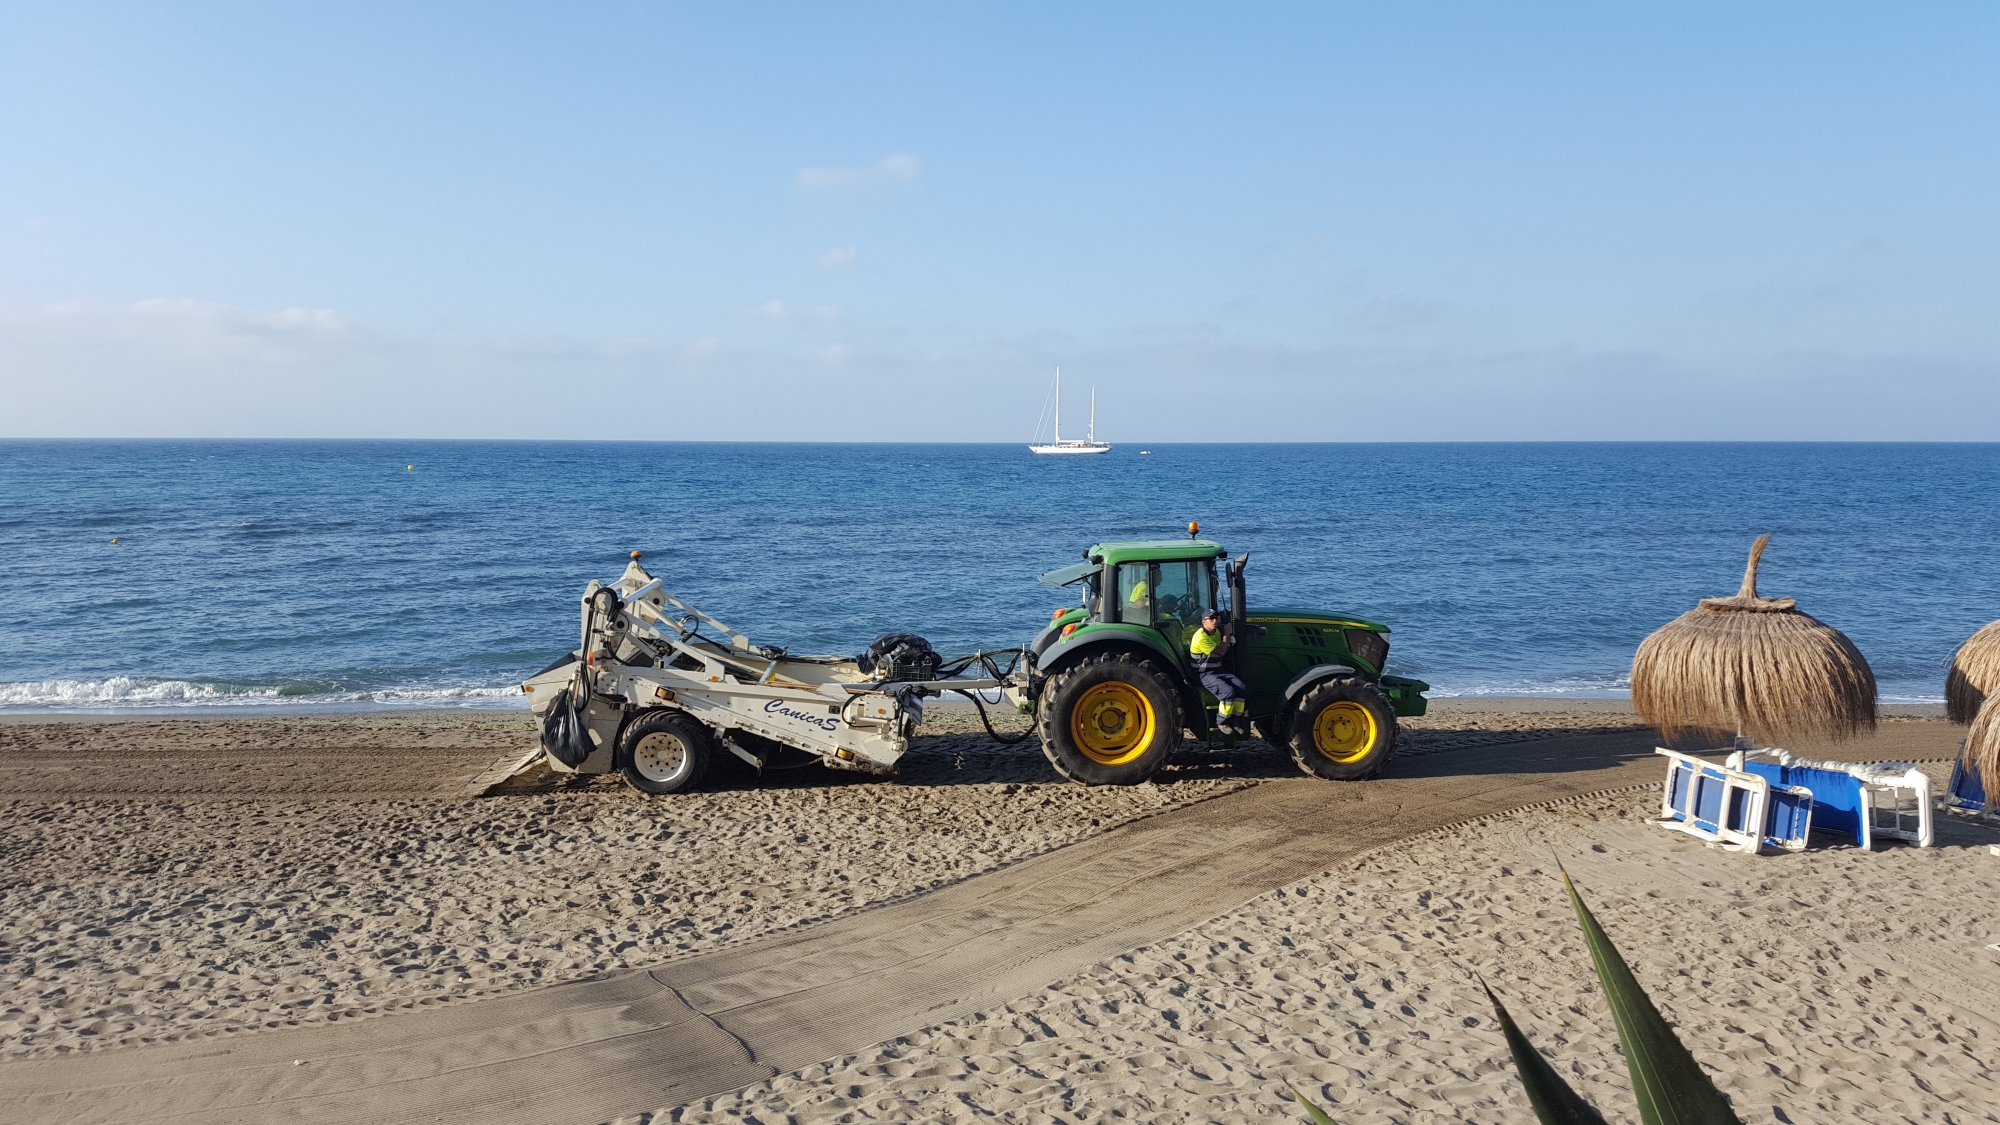 Keeping Marbella’s beaches clean